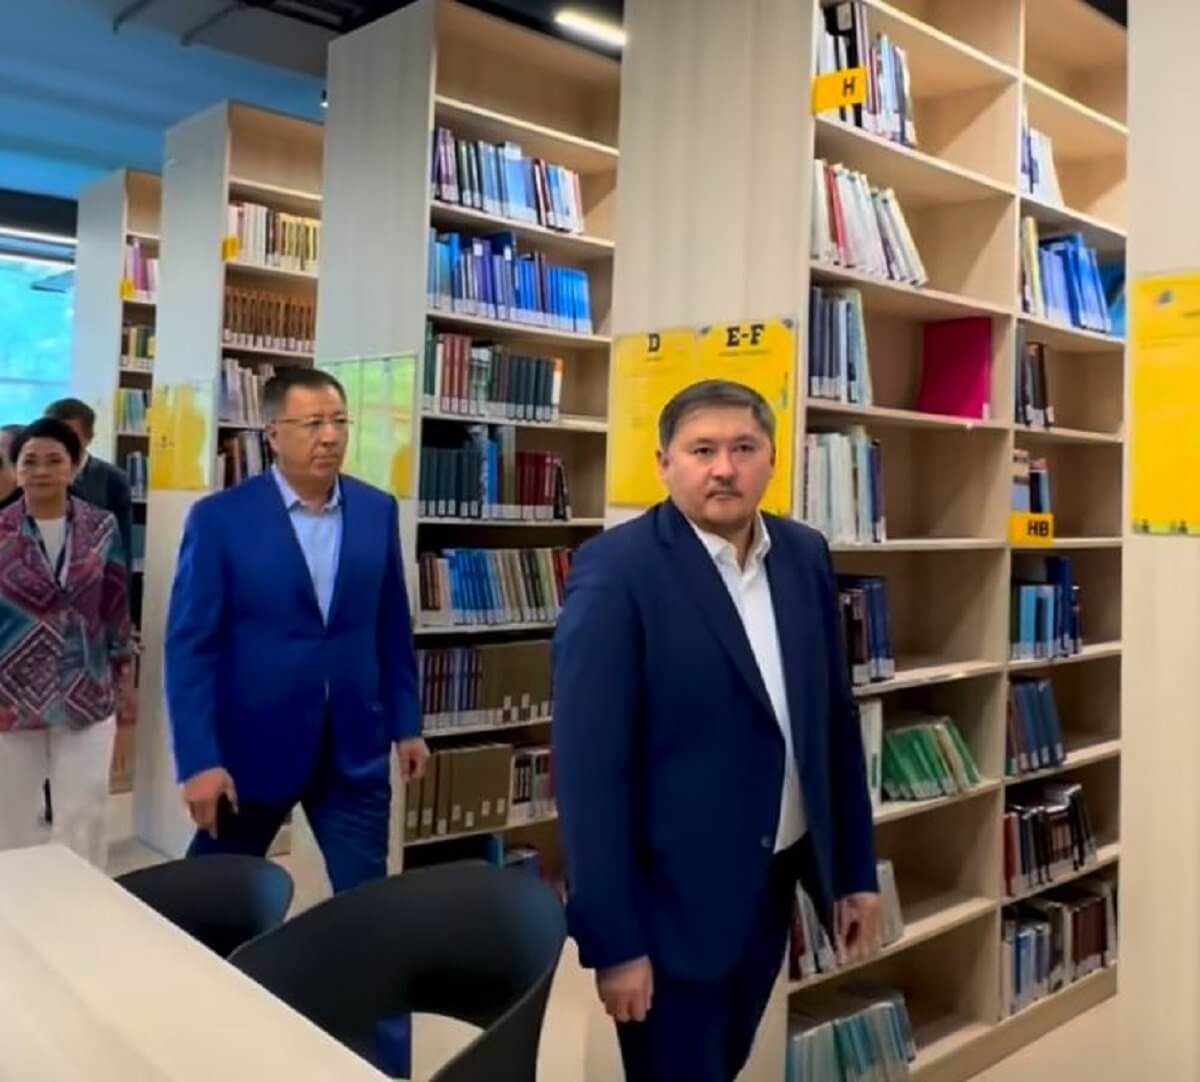 Қазір көптеген студент кітапхана мәдениетінен ажырап жатыр - Саясат Нұрбек